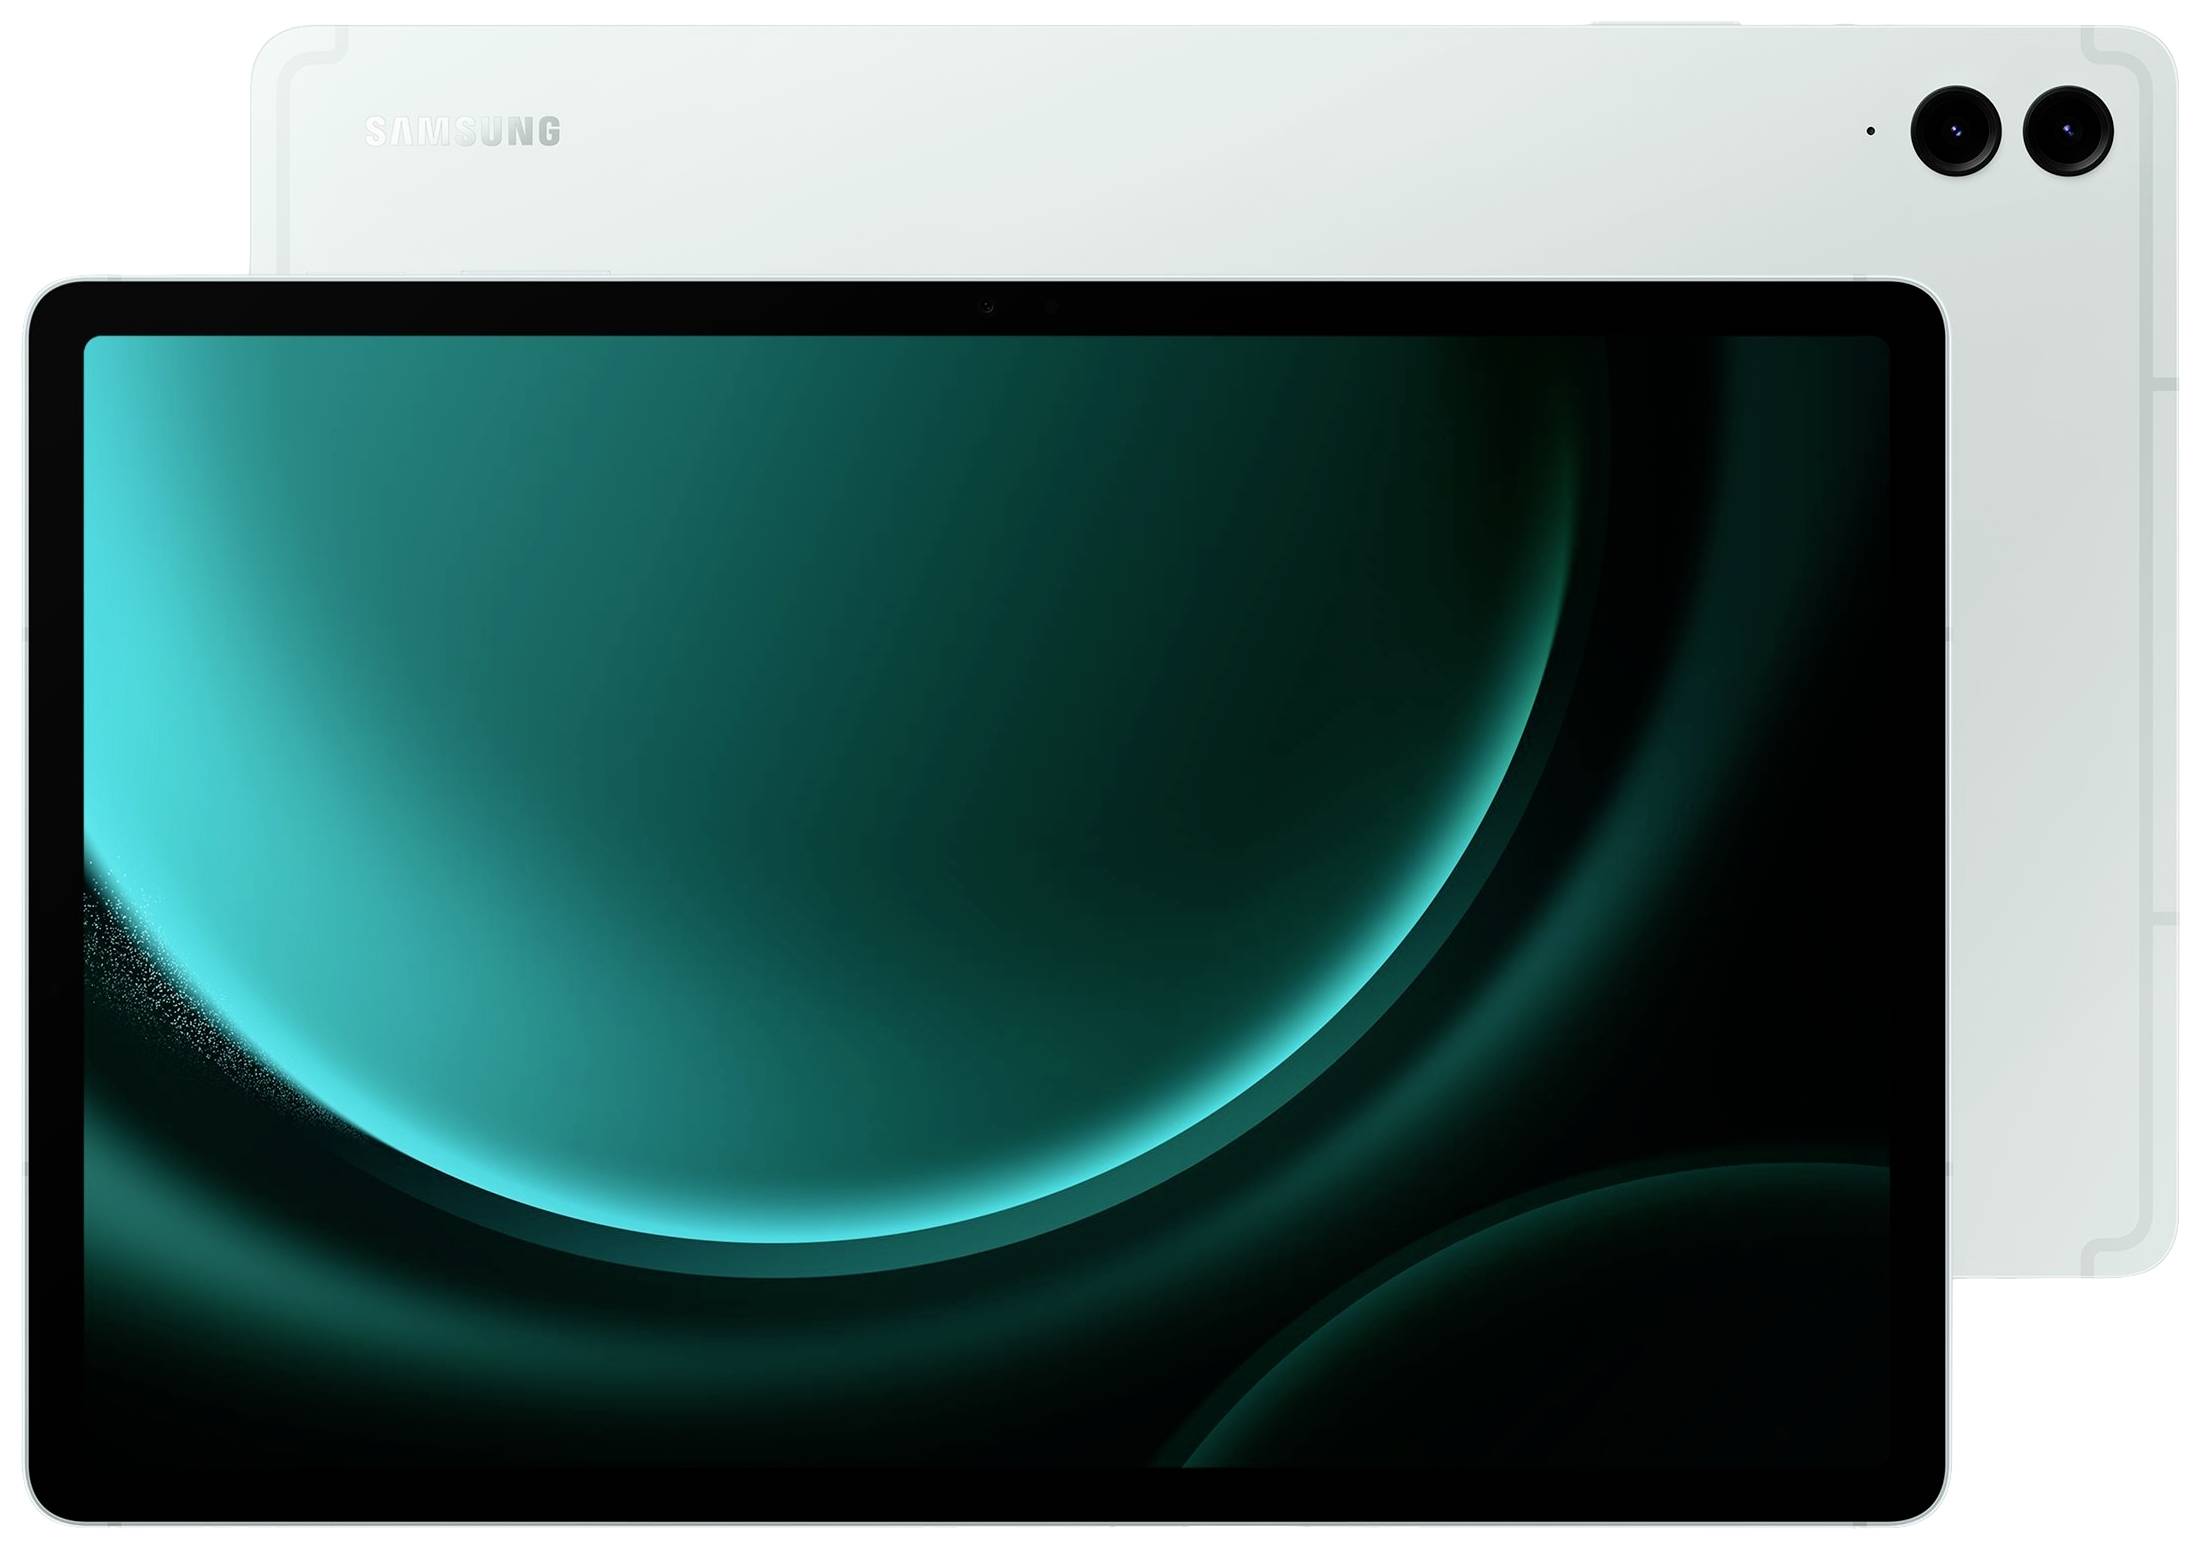 SAMSUNG Galaxy Tab S9 FE+ X610 Exynos 1380 8GB 128GB Android